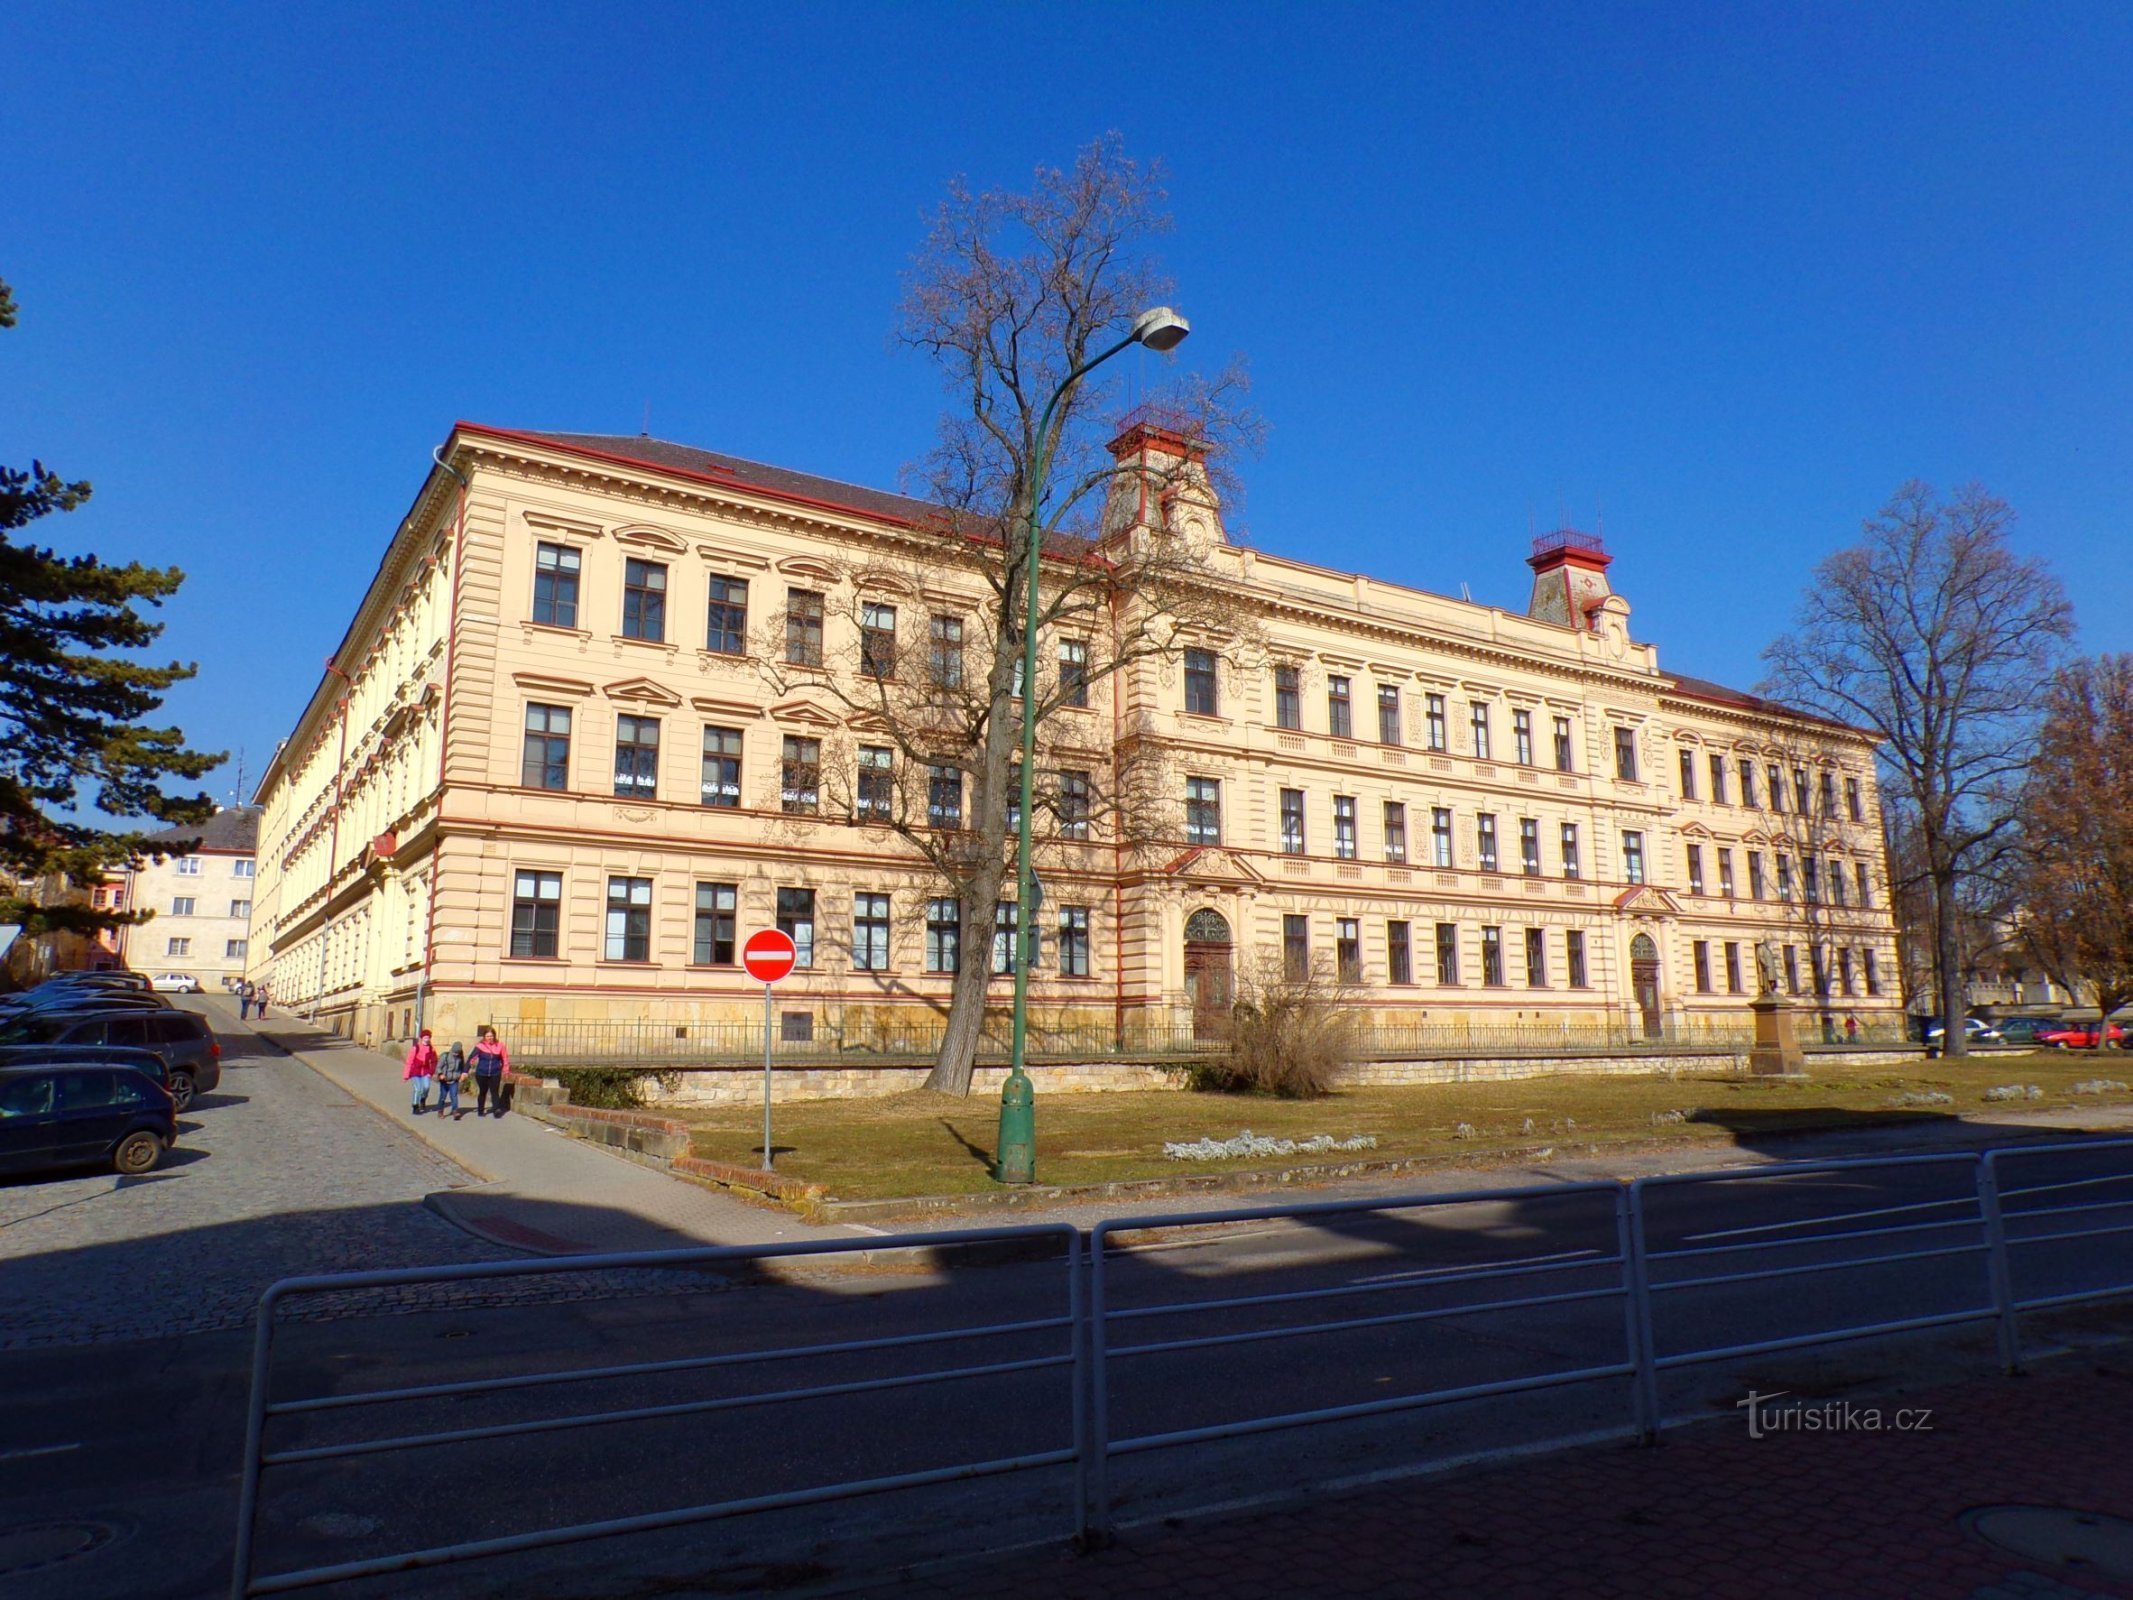 Prima clădire a școlii primare cu monumentul Jan Amos Comenius în prim plan (Jičín, 1)